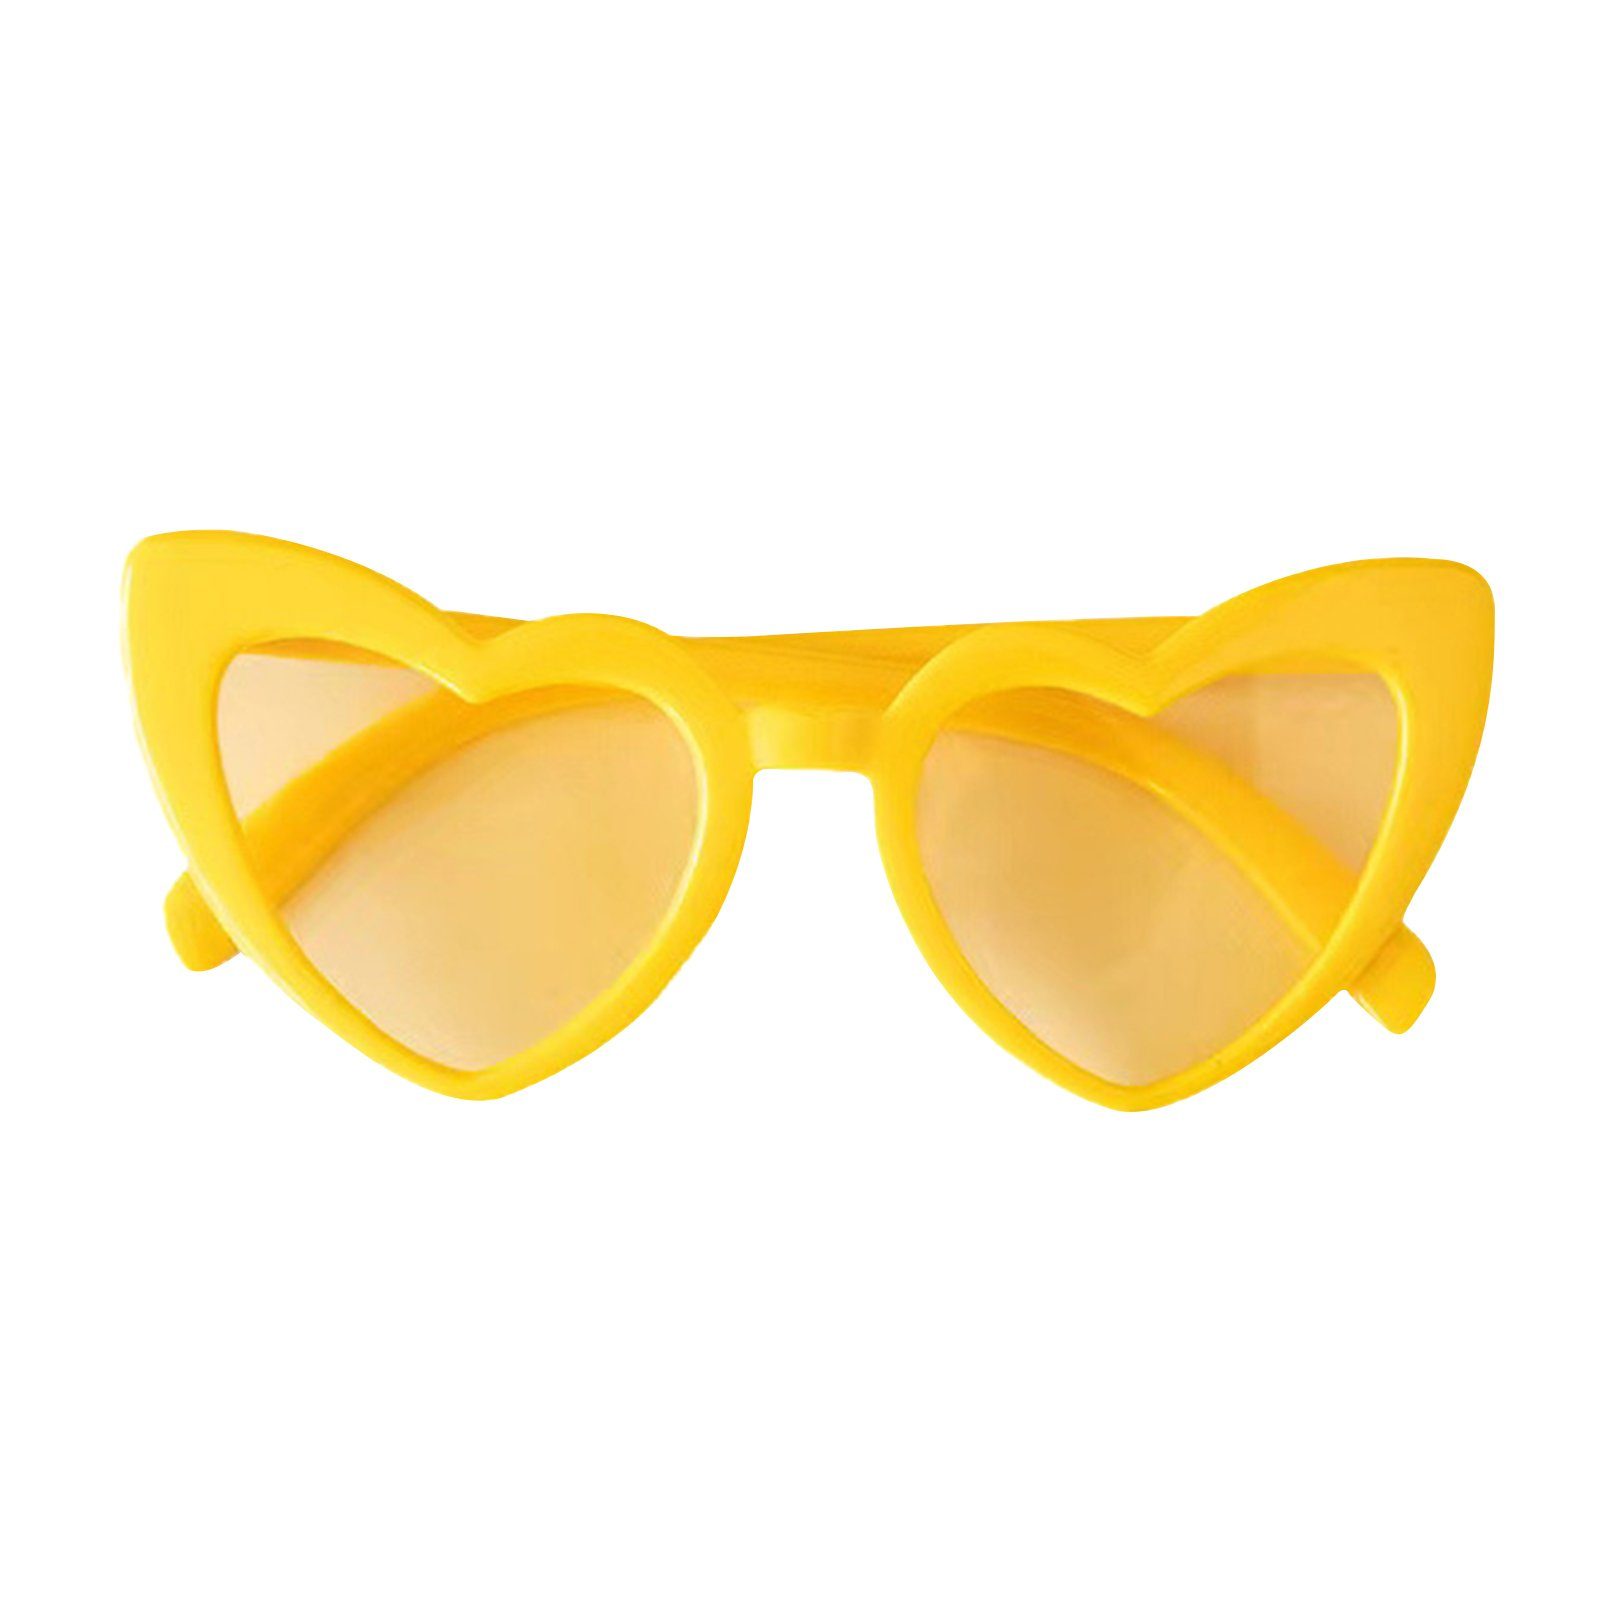 Damen-Sonnenbrille Blusmart In Retrosonnenbrille Herzform, yellow Blendfrei Vintage-Stil,